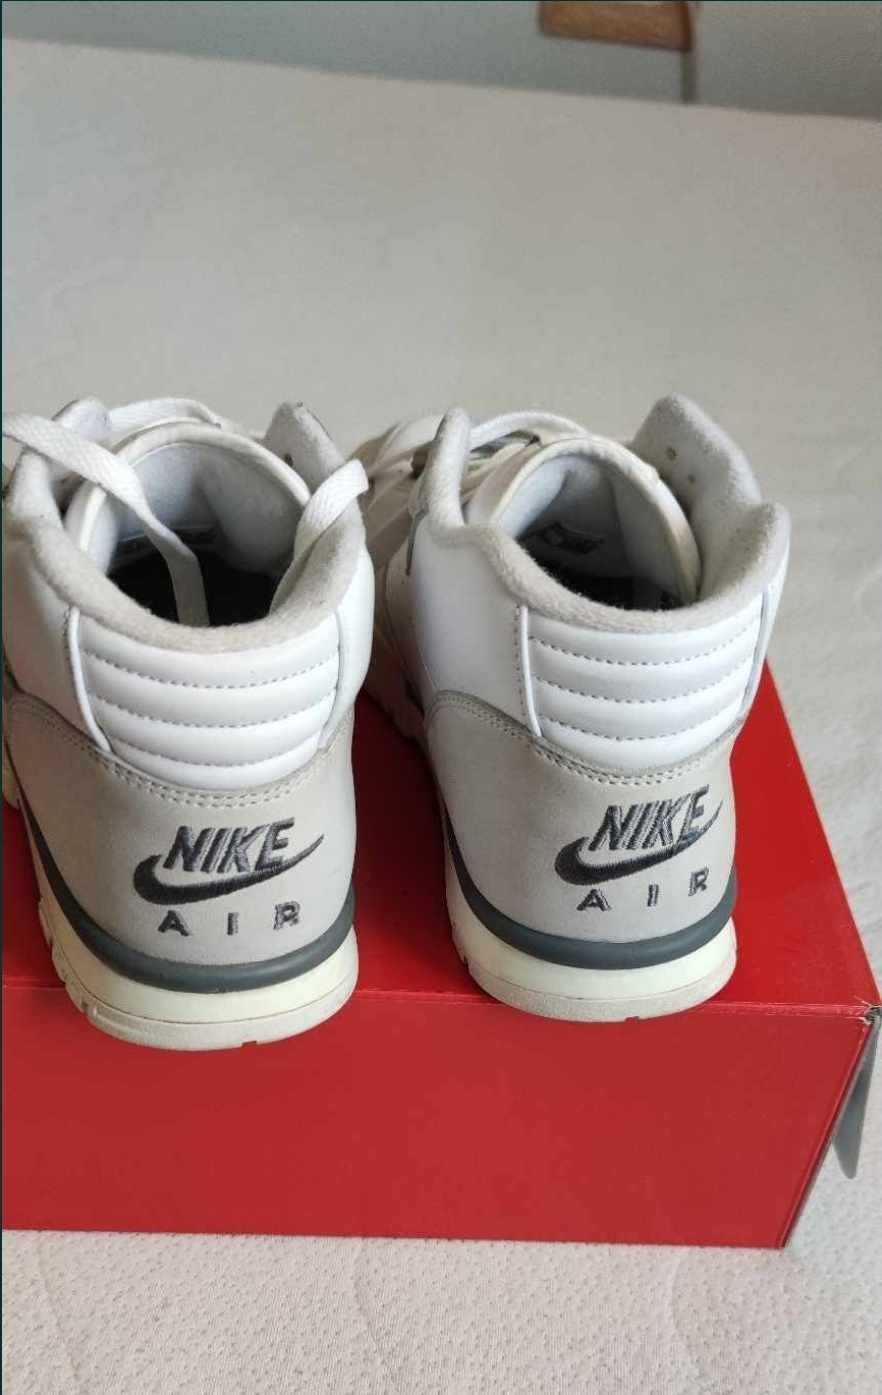 Nike Air original